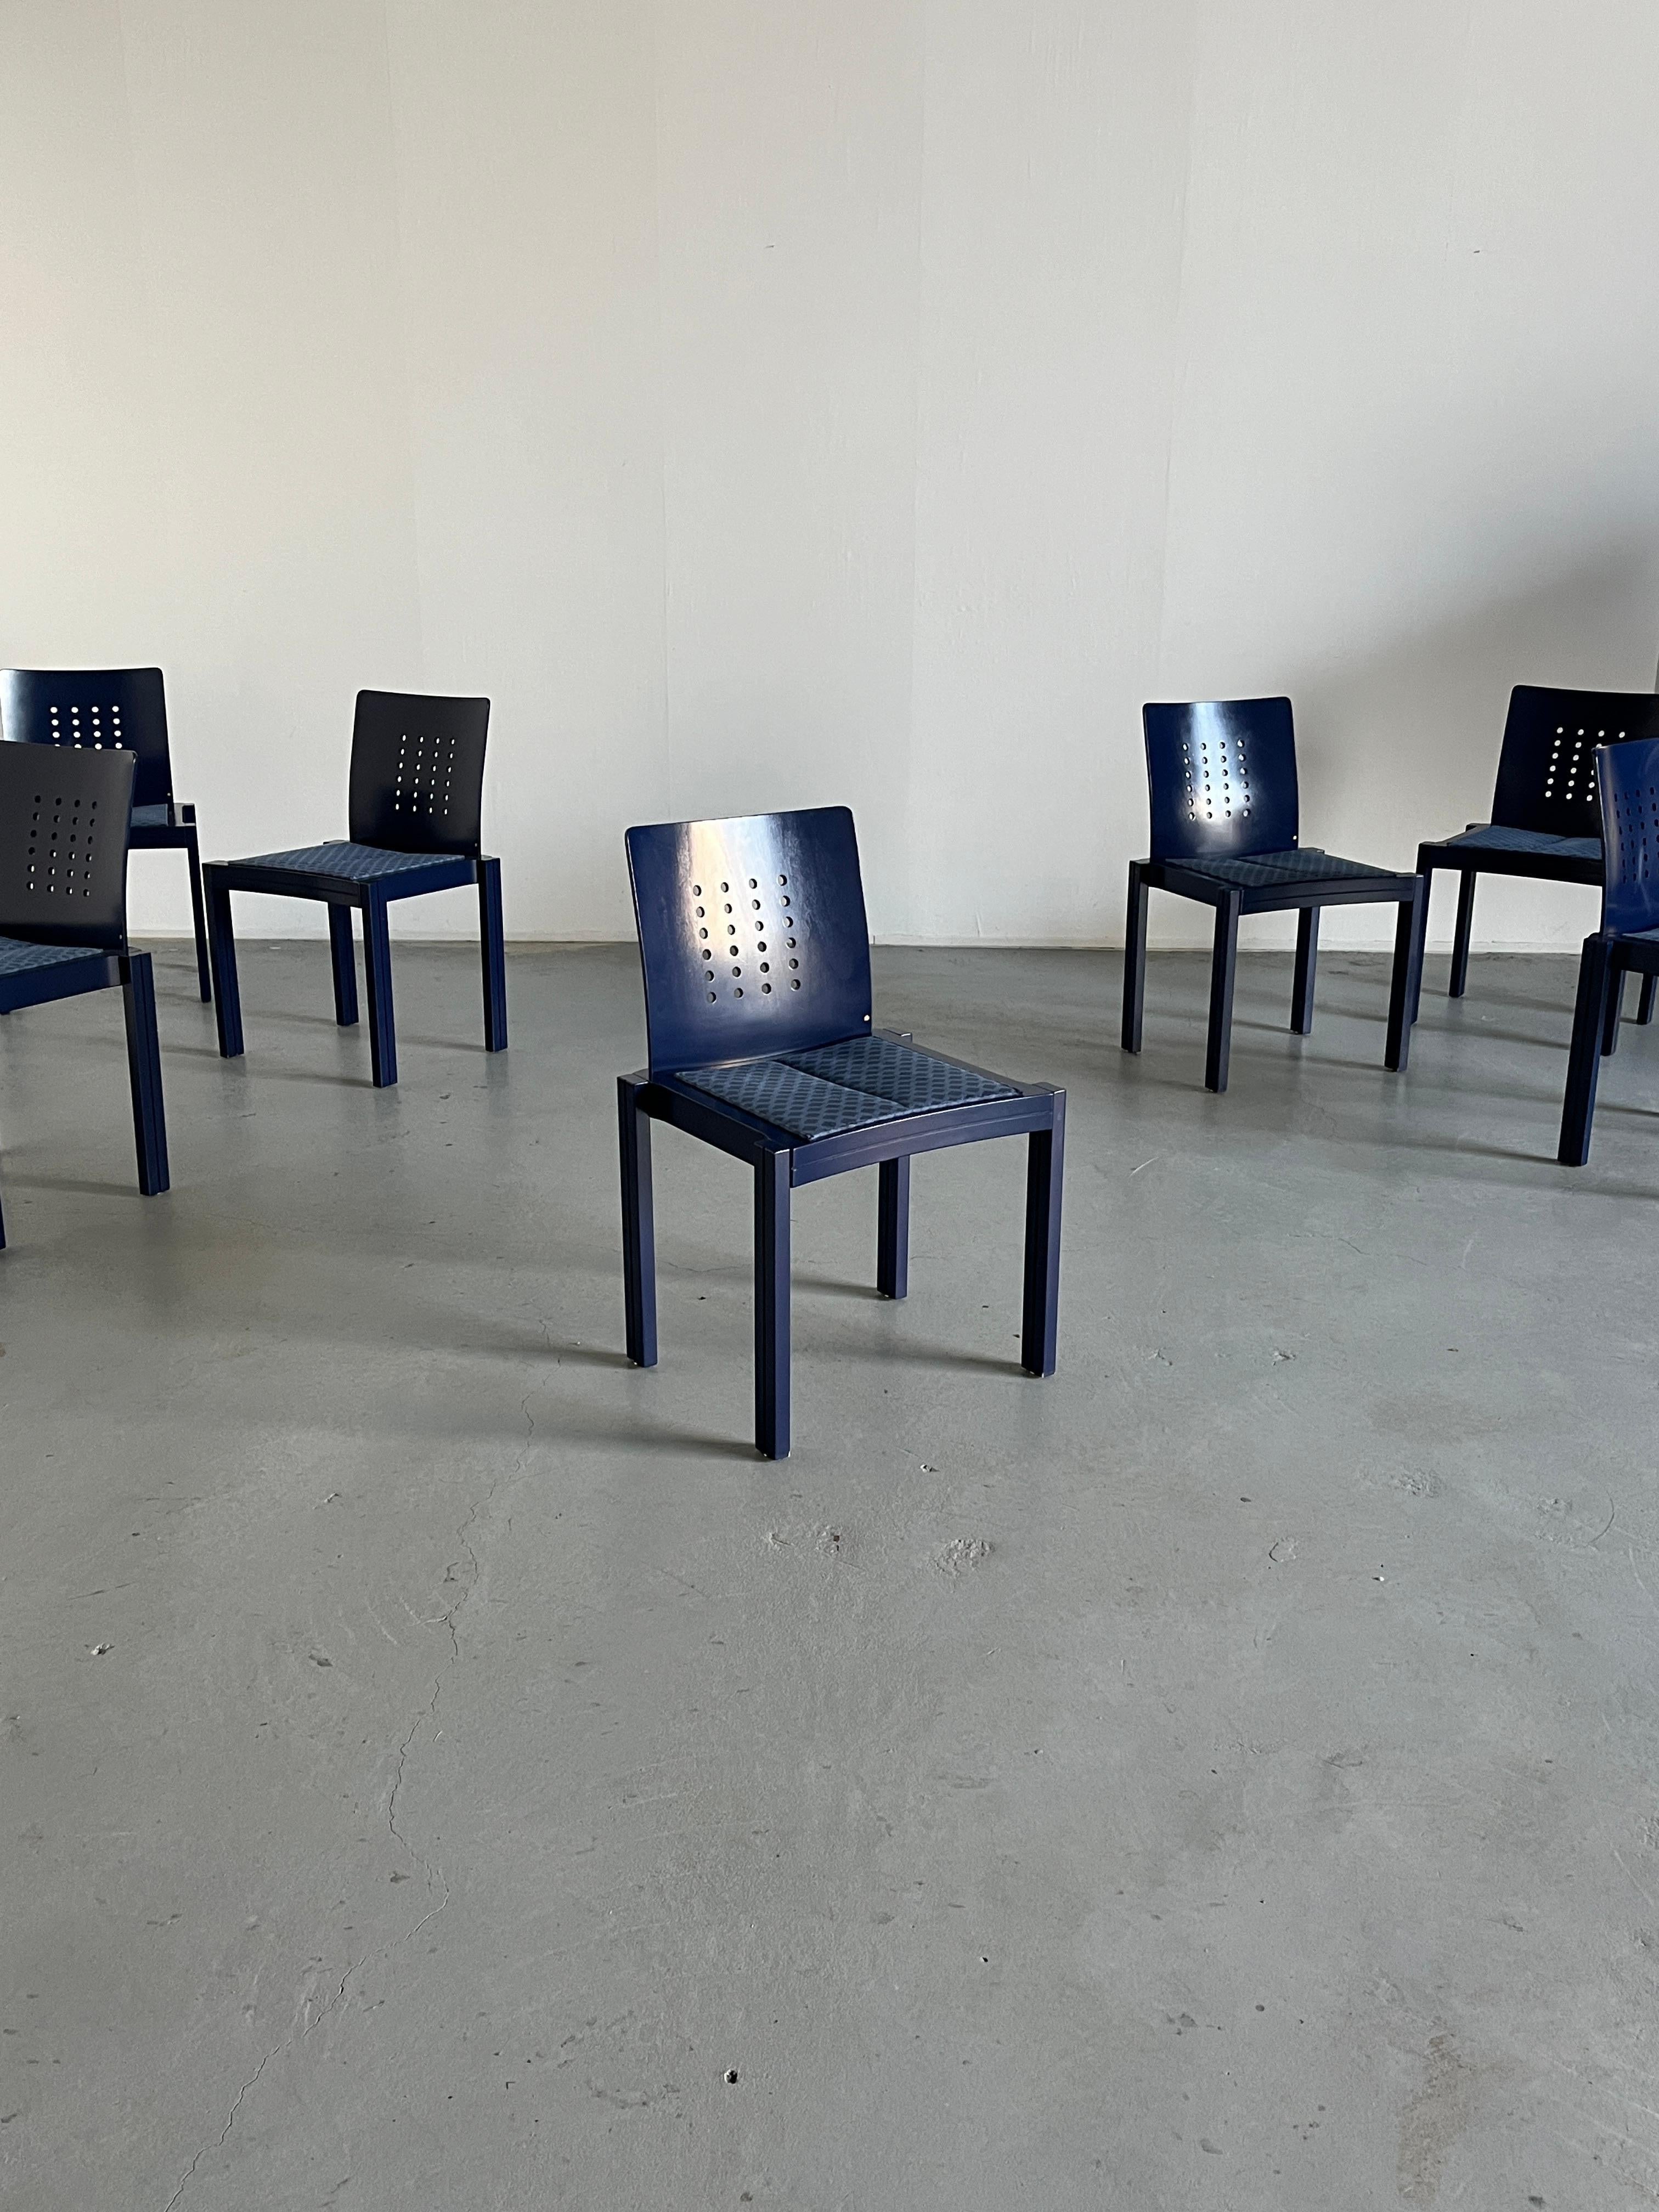 Außergewöhnlich seltene und sammelwürdige original Thonet Esszimmerstühle im postmodernen Memphis-Design. 
Bildhauerisch und geometrisch geformt.

Verkauft pro Stück.
Zwanzig Stück verfügbar.

Produziert von Thonet Wien im Jahr 1996.
Qualität